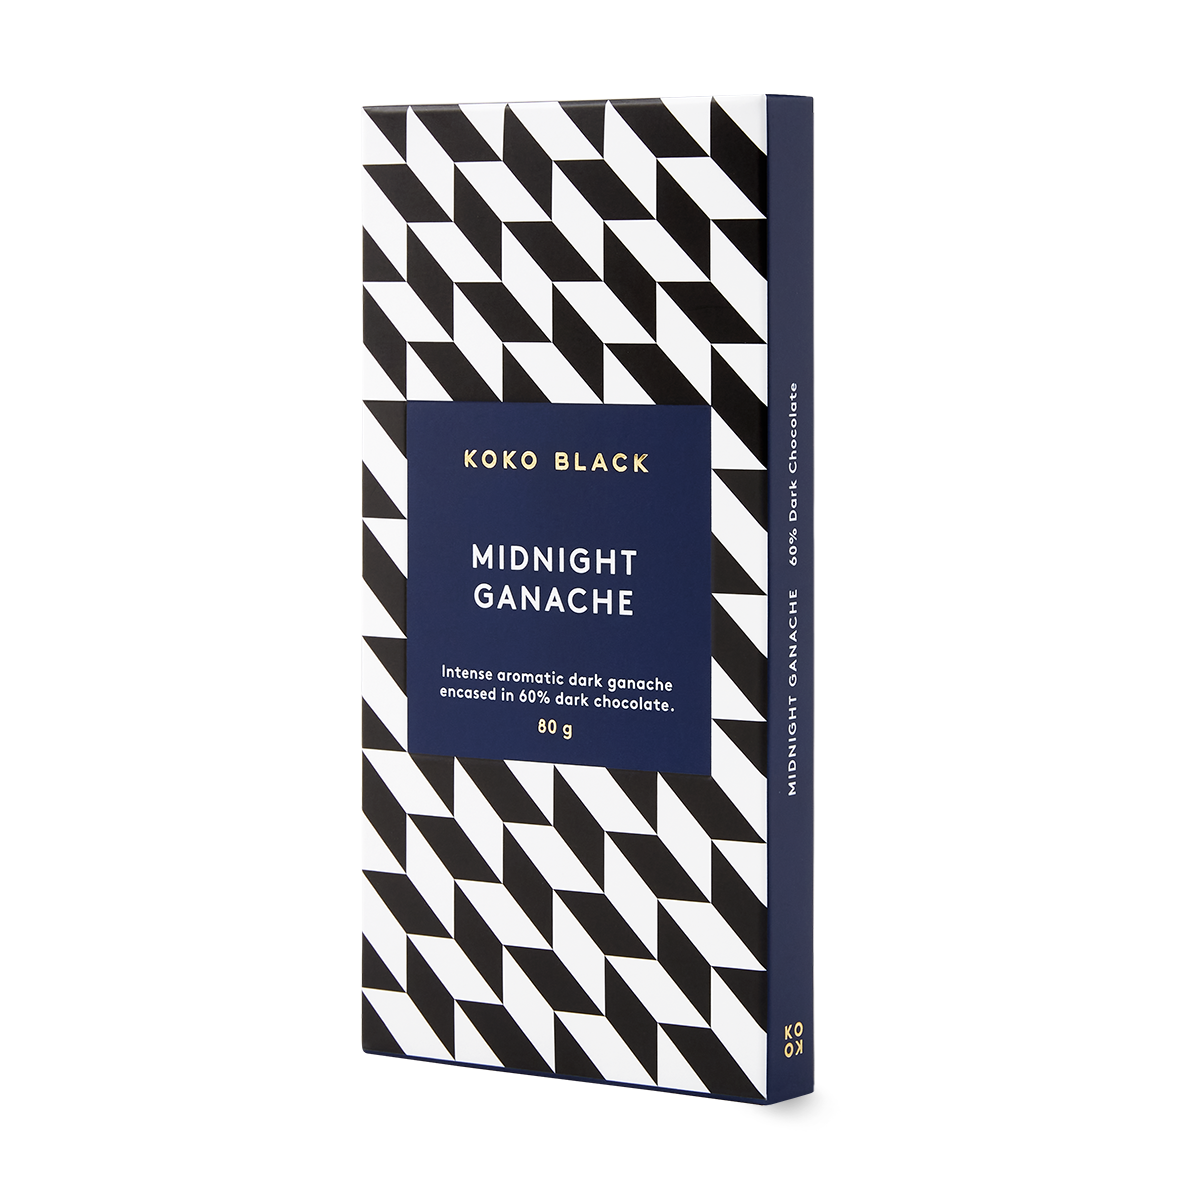 Midnight Ganache | Dark Chocolate Block